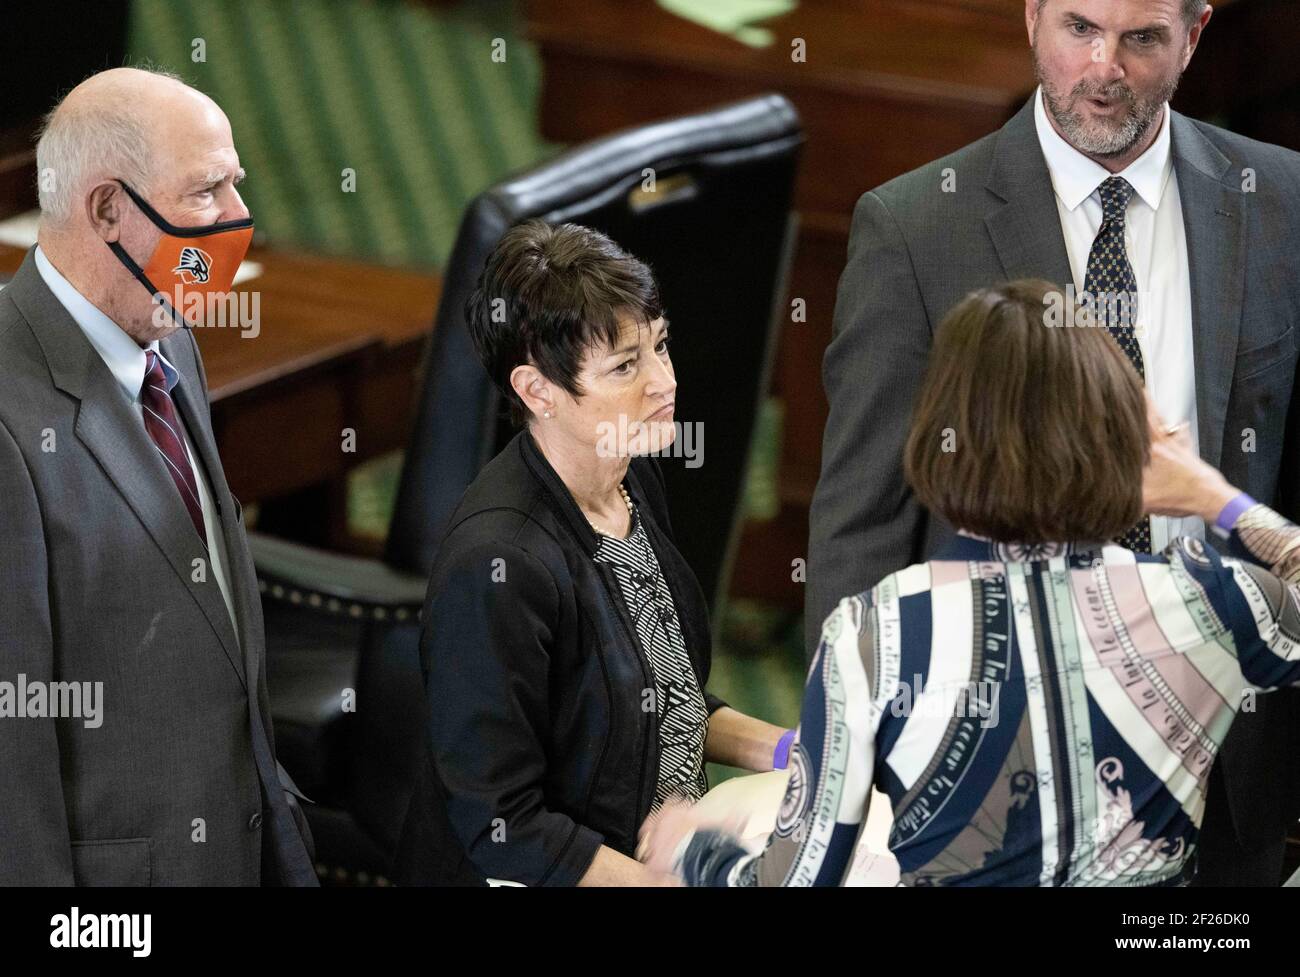 Austin, Texas États-Unis le 9 mars 2021: Les sénateurs du Texas, dont le sénateur Donna Campbell, R-New Braunfels, se concerent avec leurs collègues lors d'une session de la 87e législature du Texas. ©Bob Daemmrich Banque D'Images